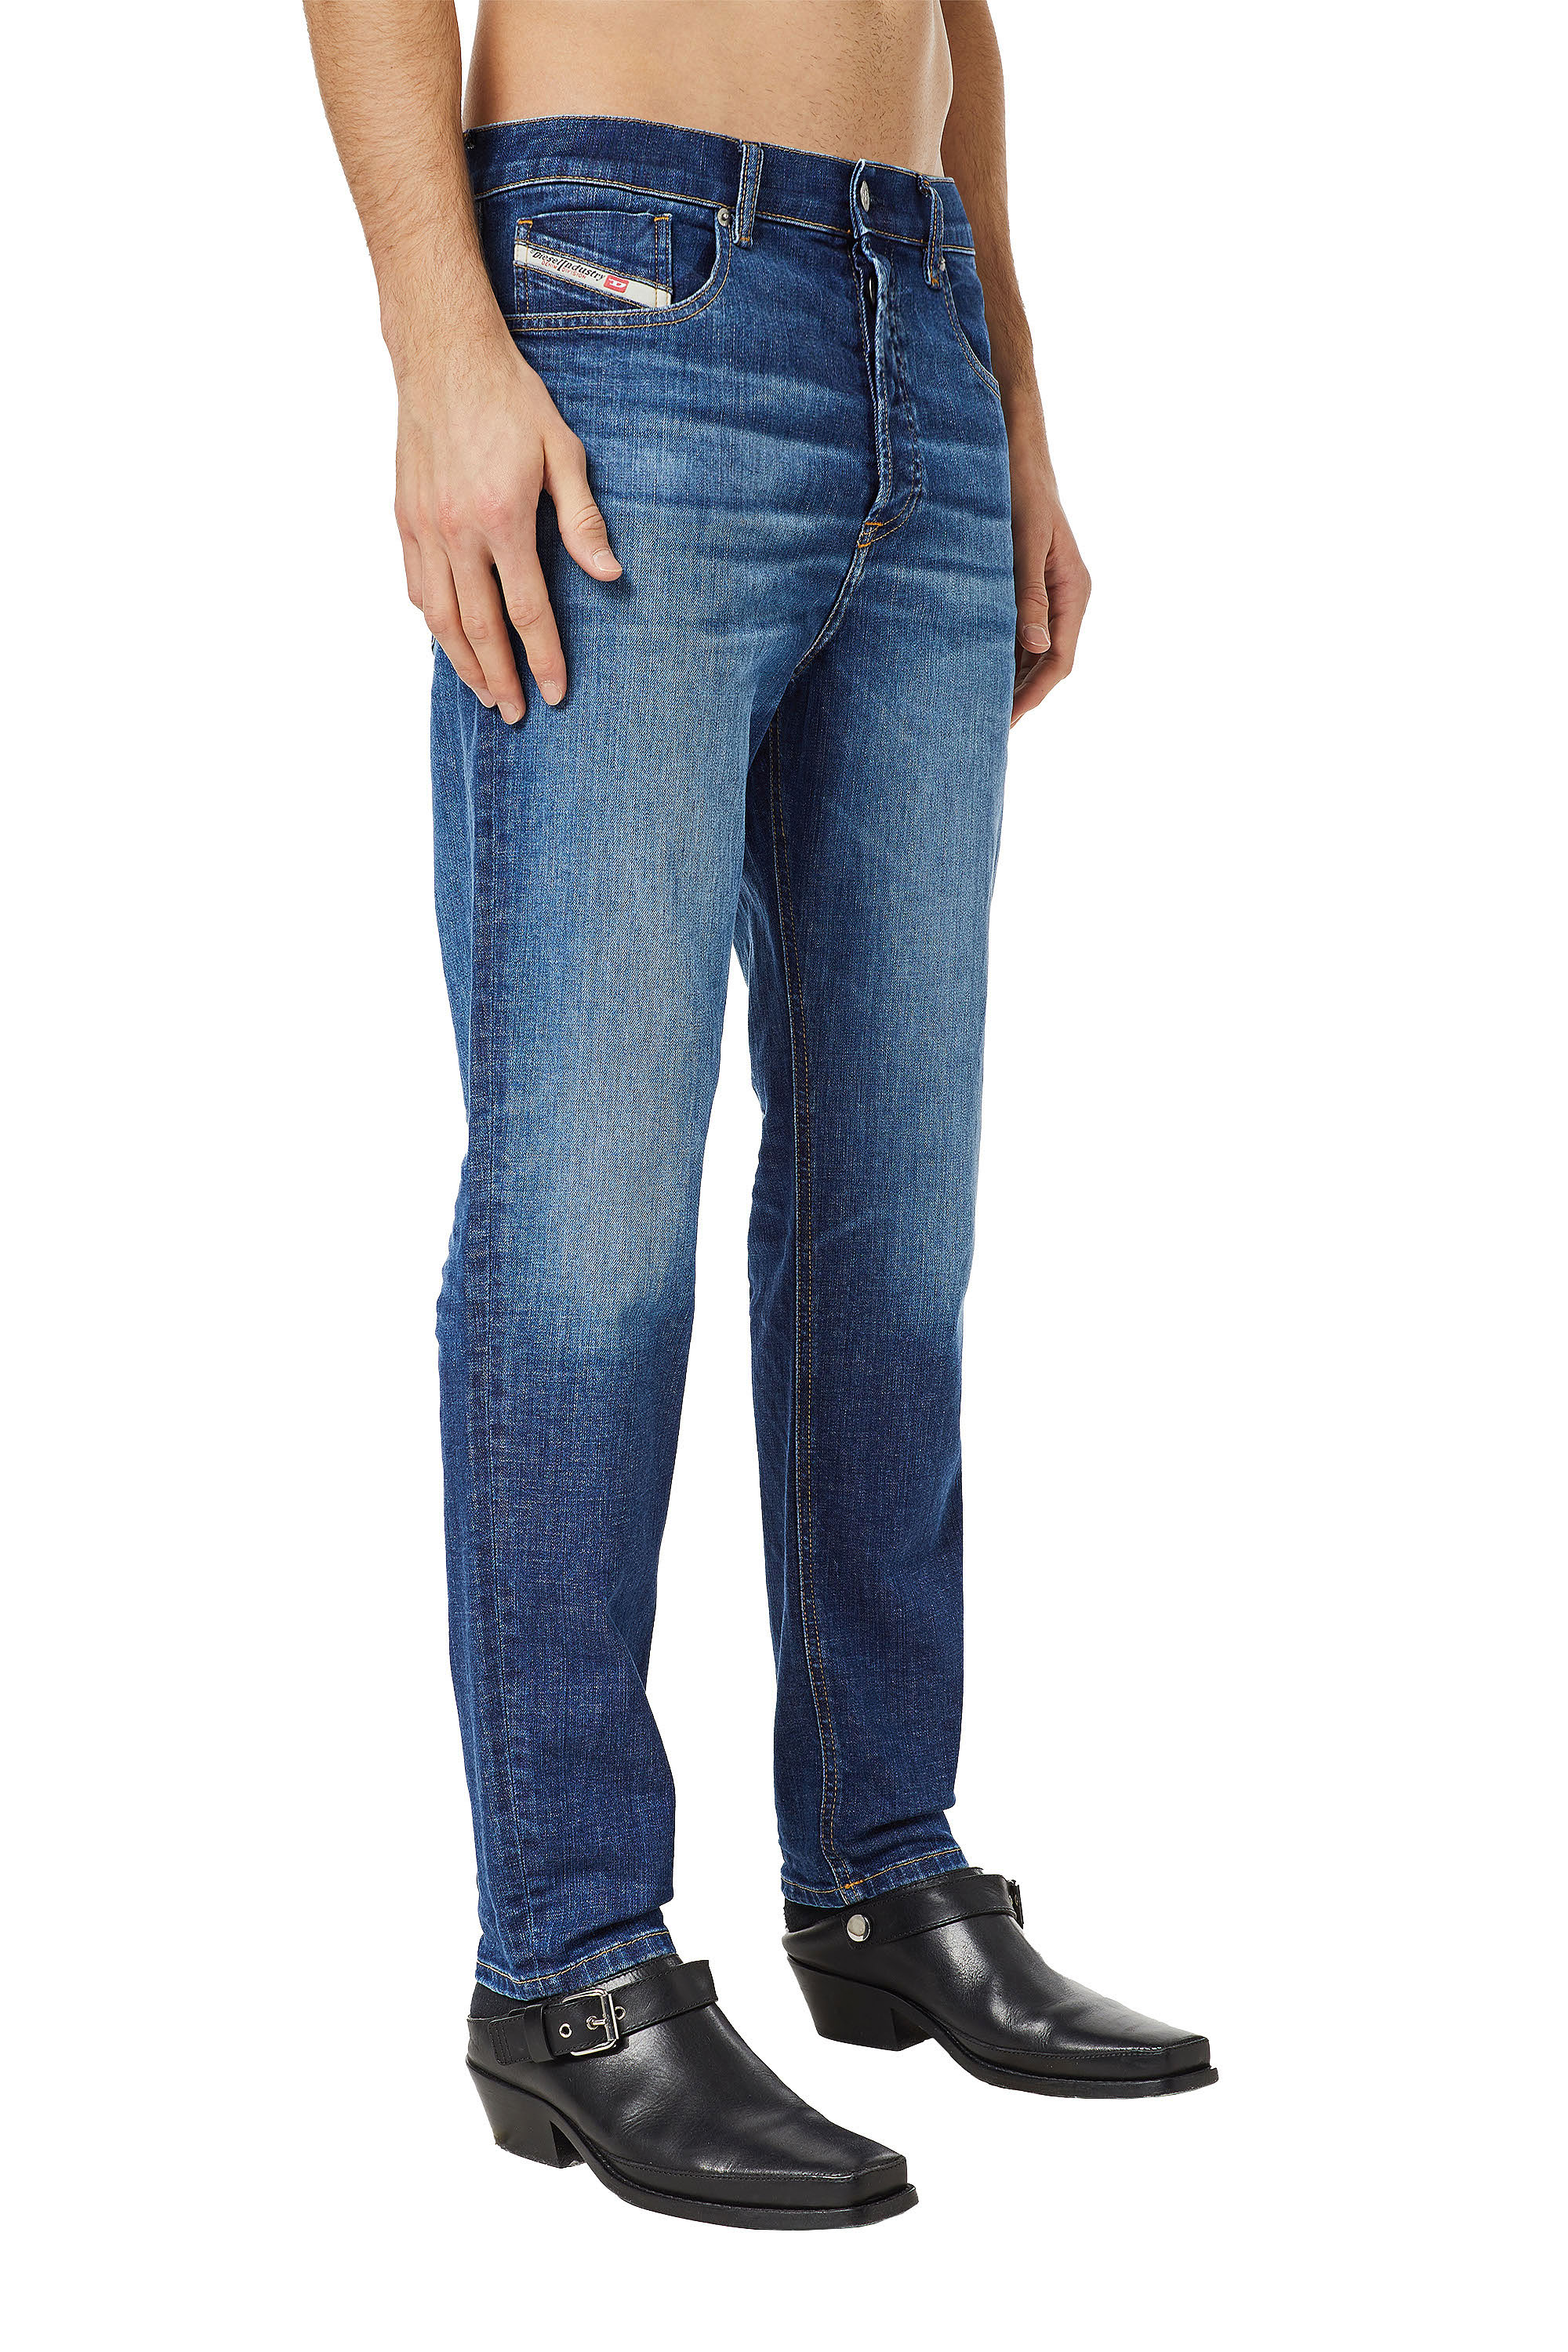 Super skinny fit jeans herren - Die qualitativsten Super skinny fit jeans herren analysiert!